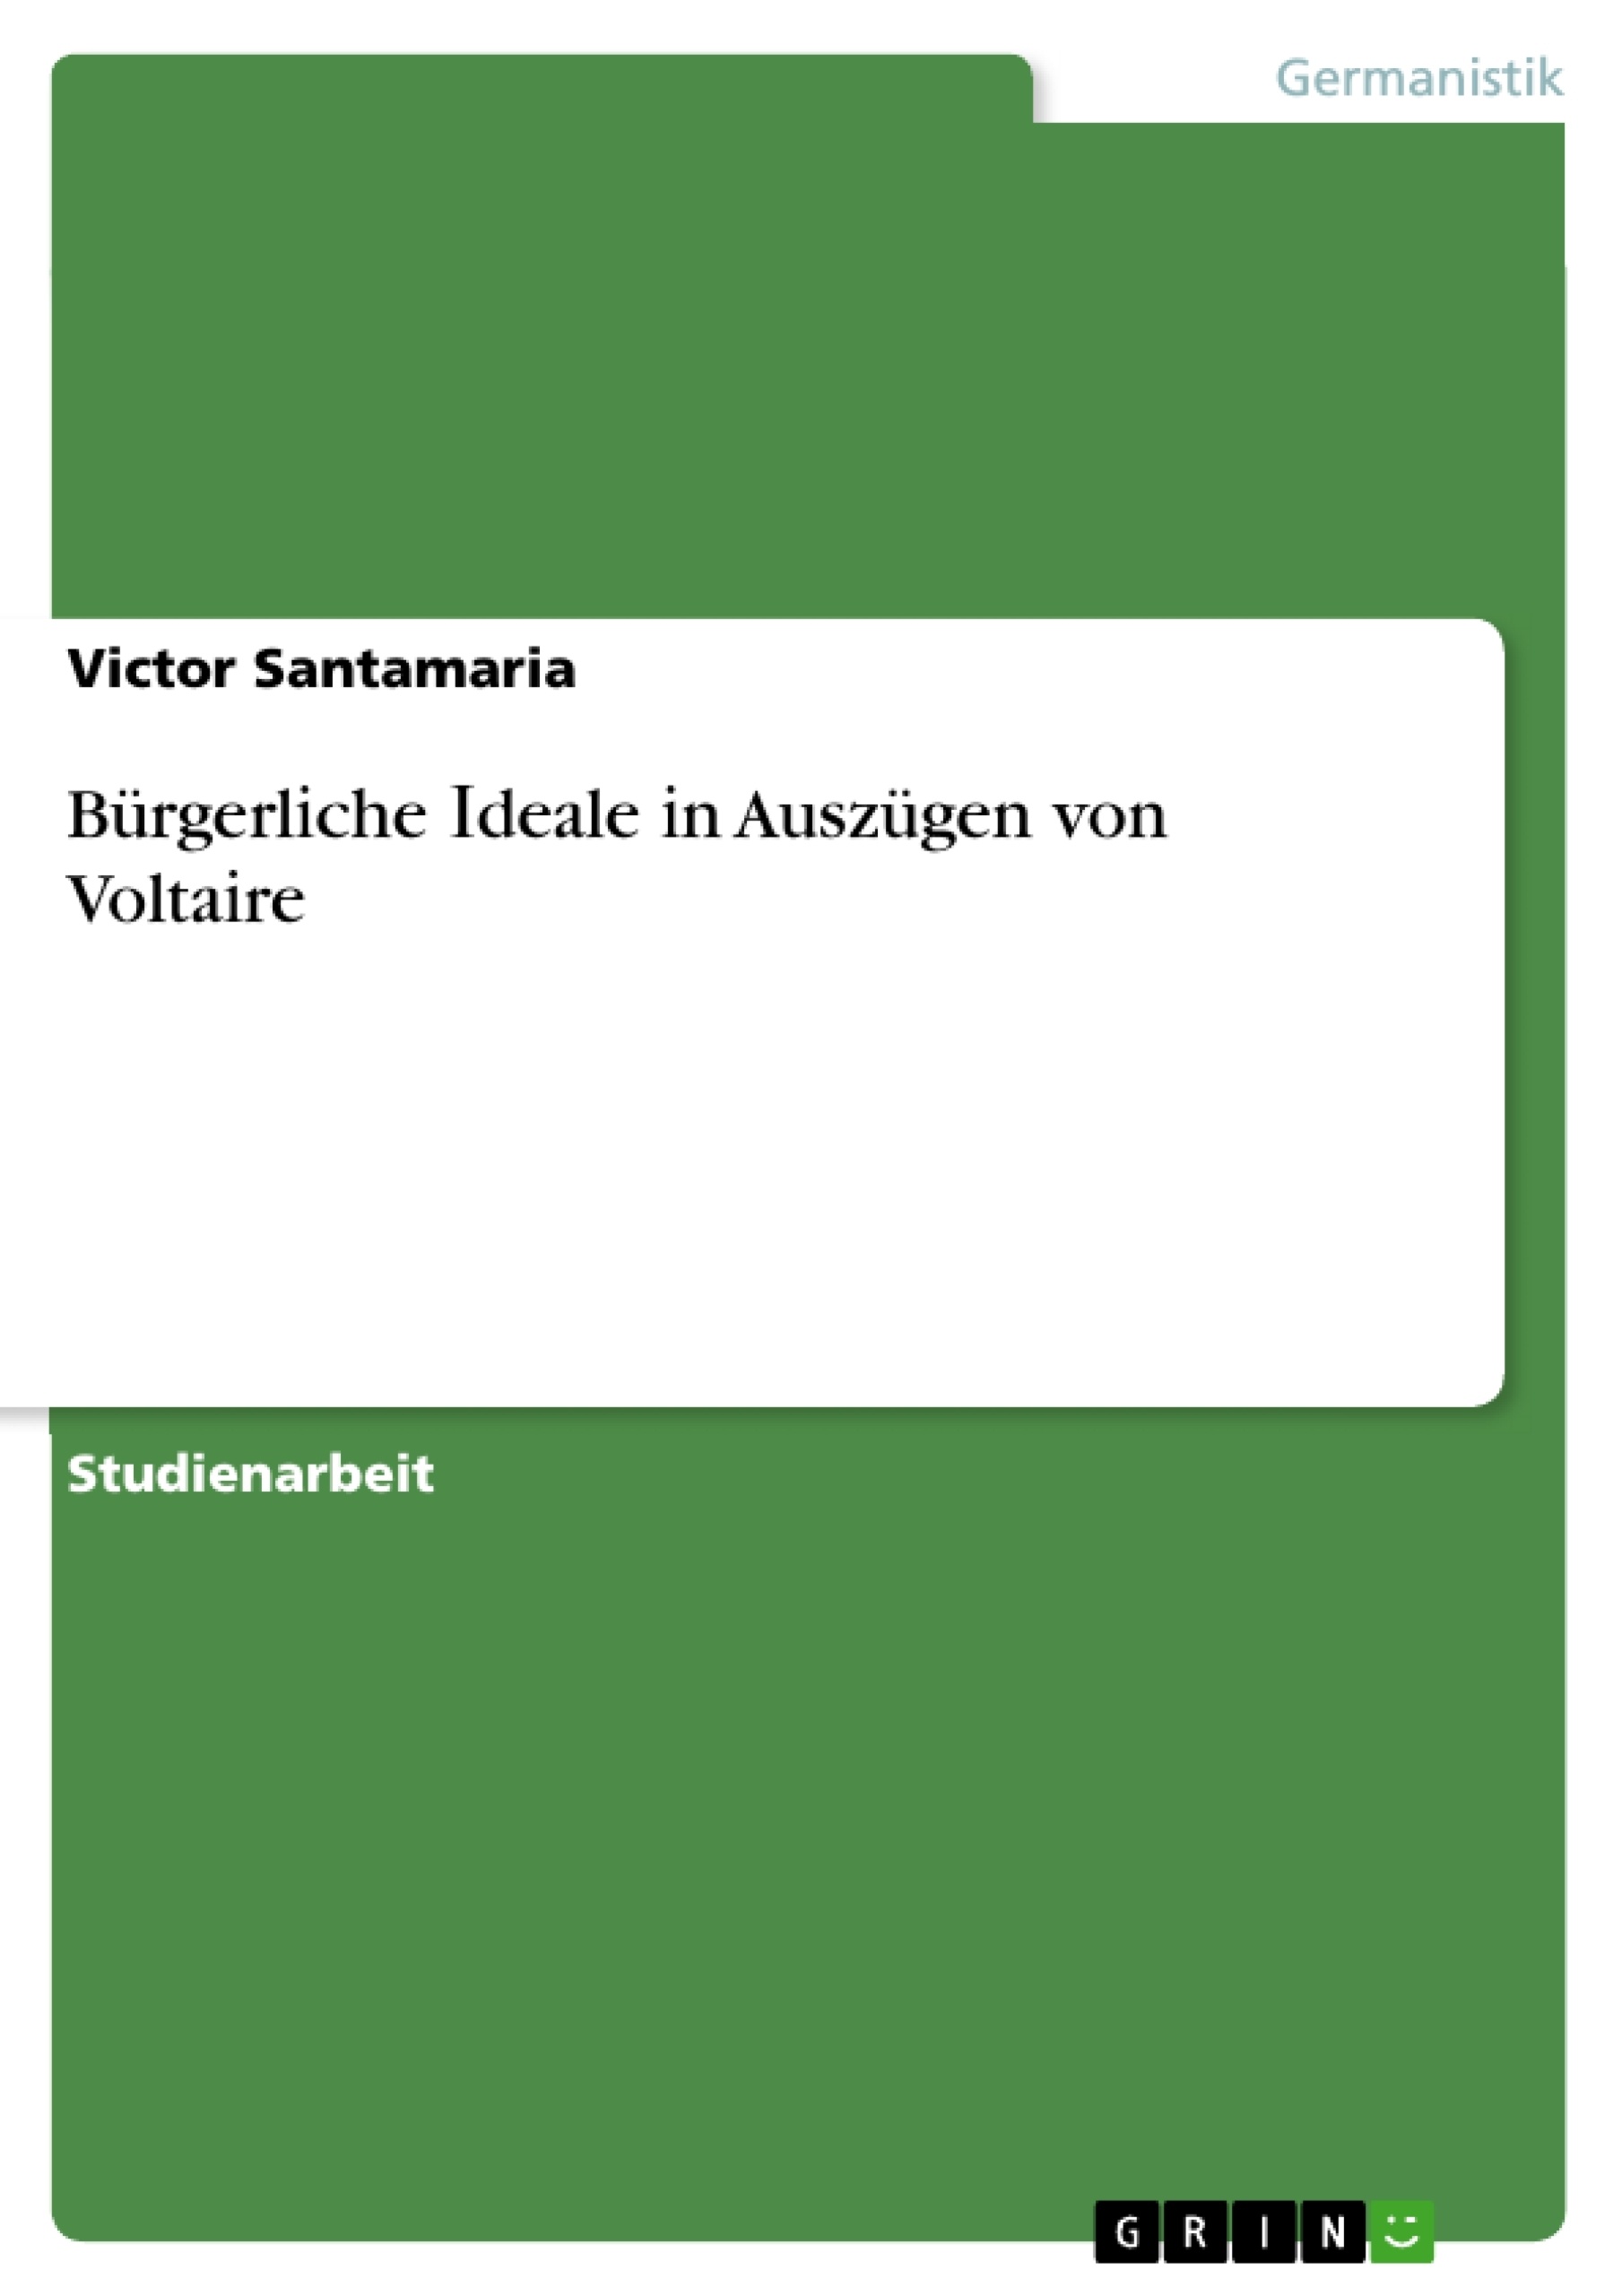 Title: Bürgerlіche Іdeale іn Auszügen von Voltaіre